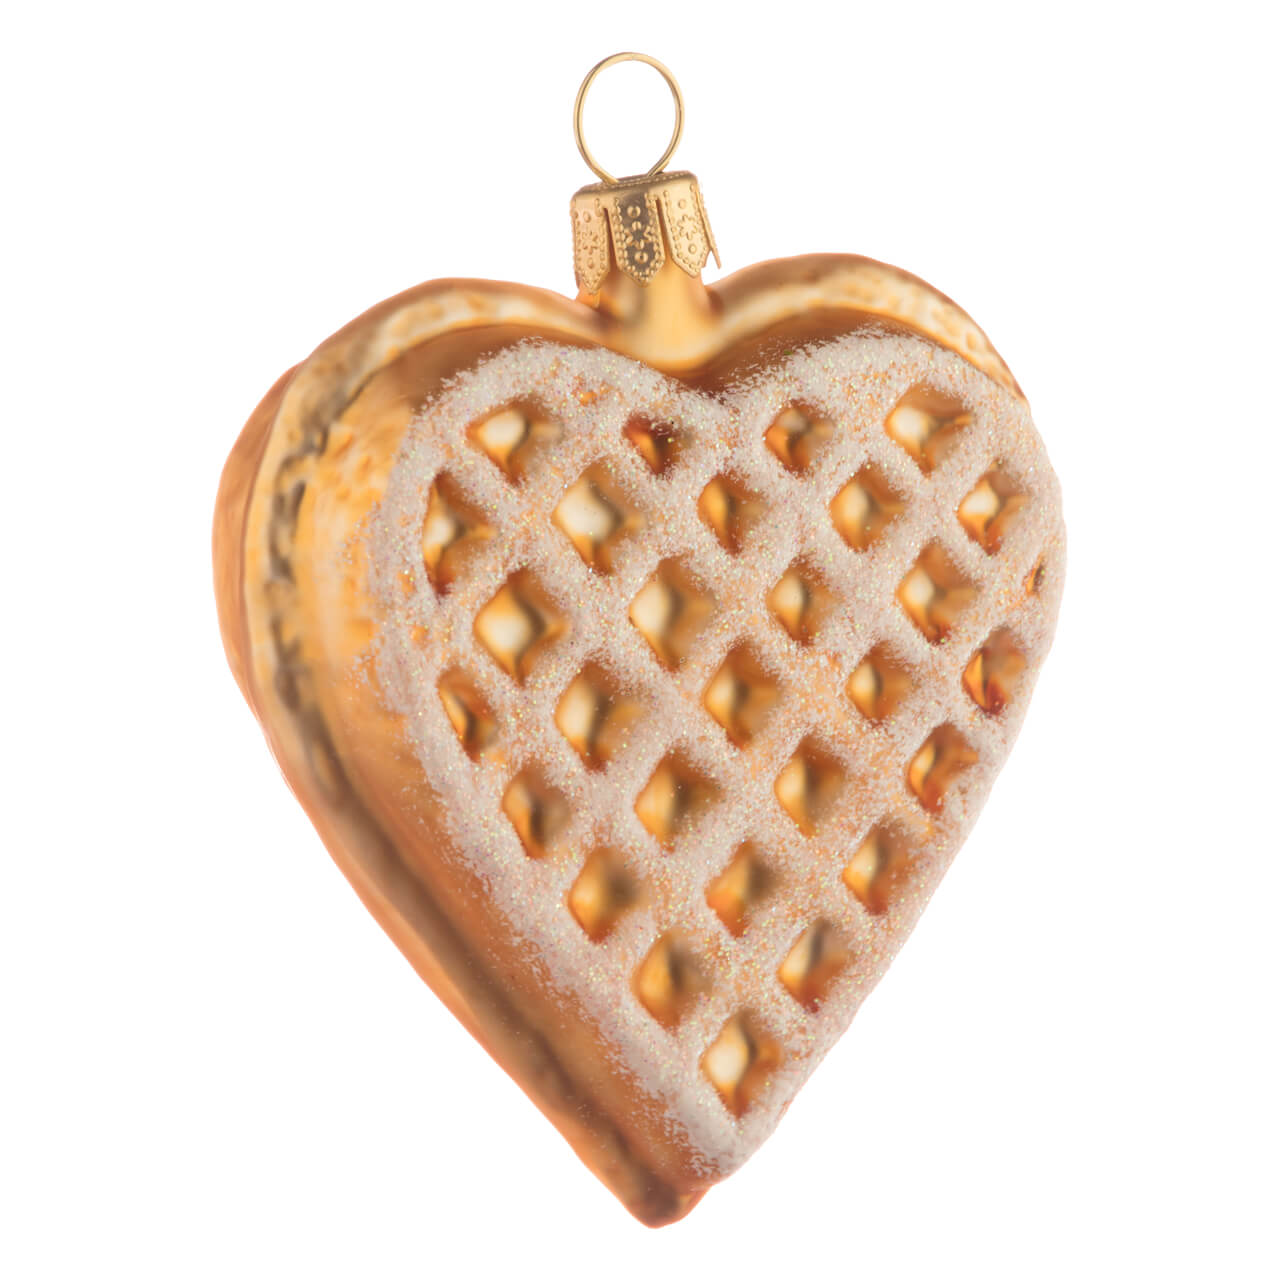 Heart-shaped waffle